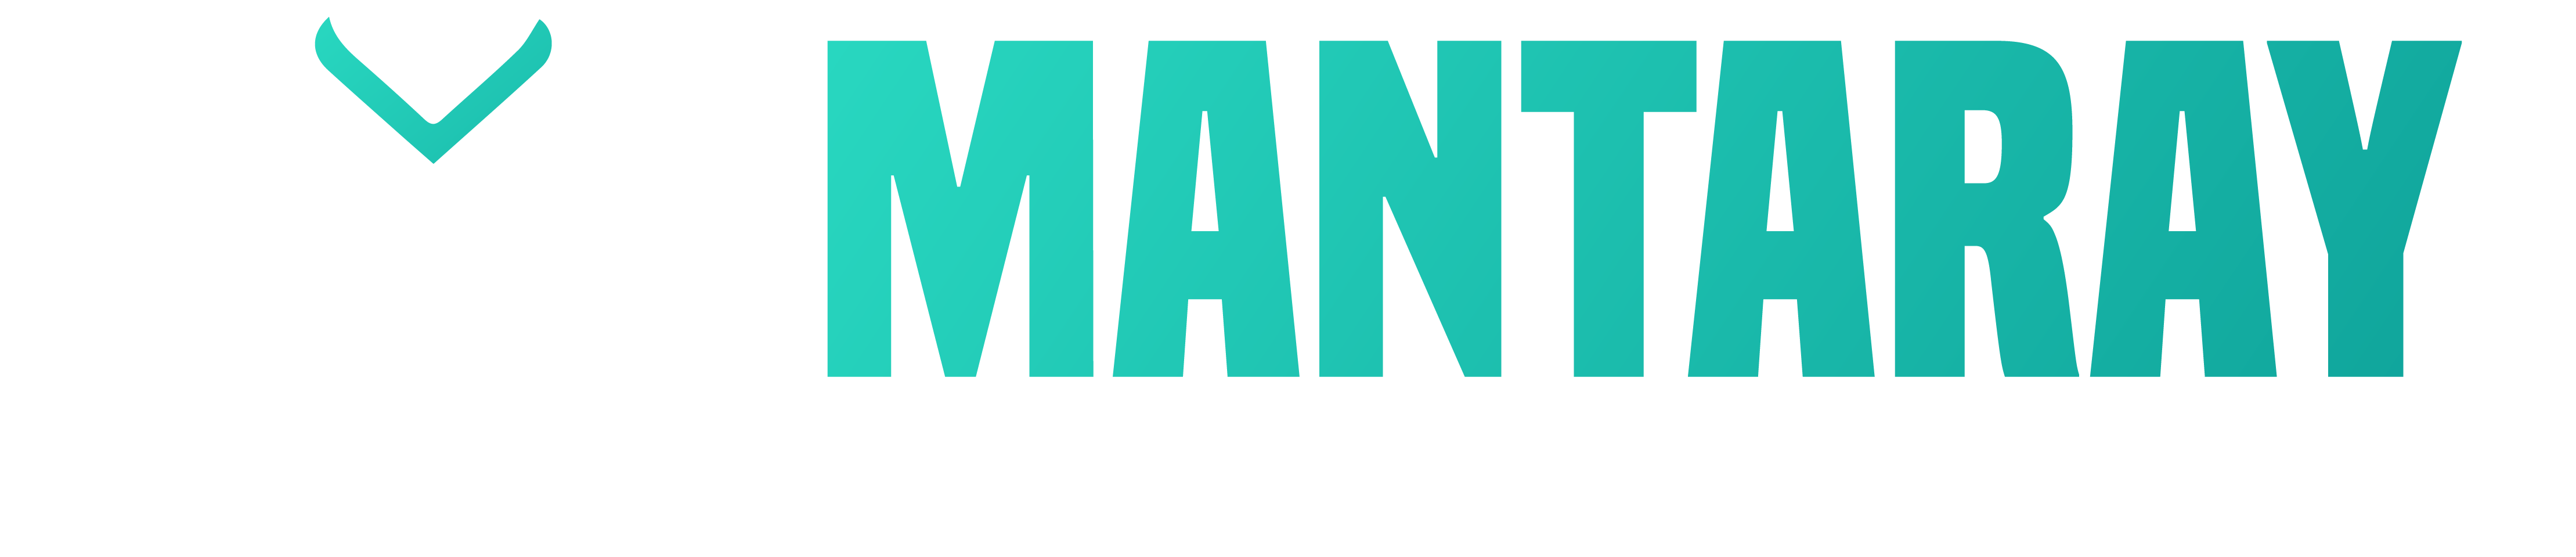 Mantaray Technology